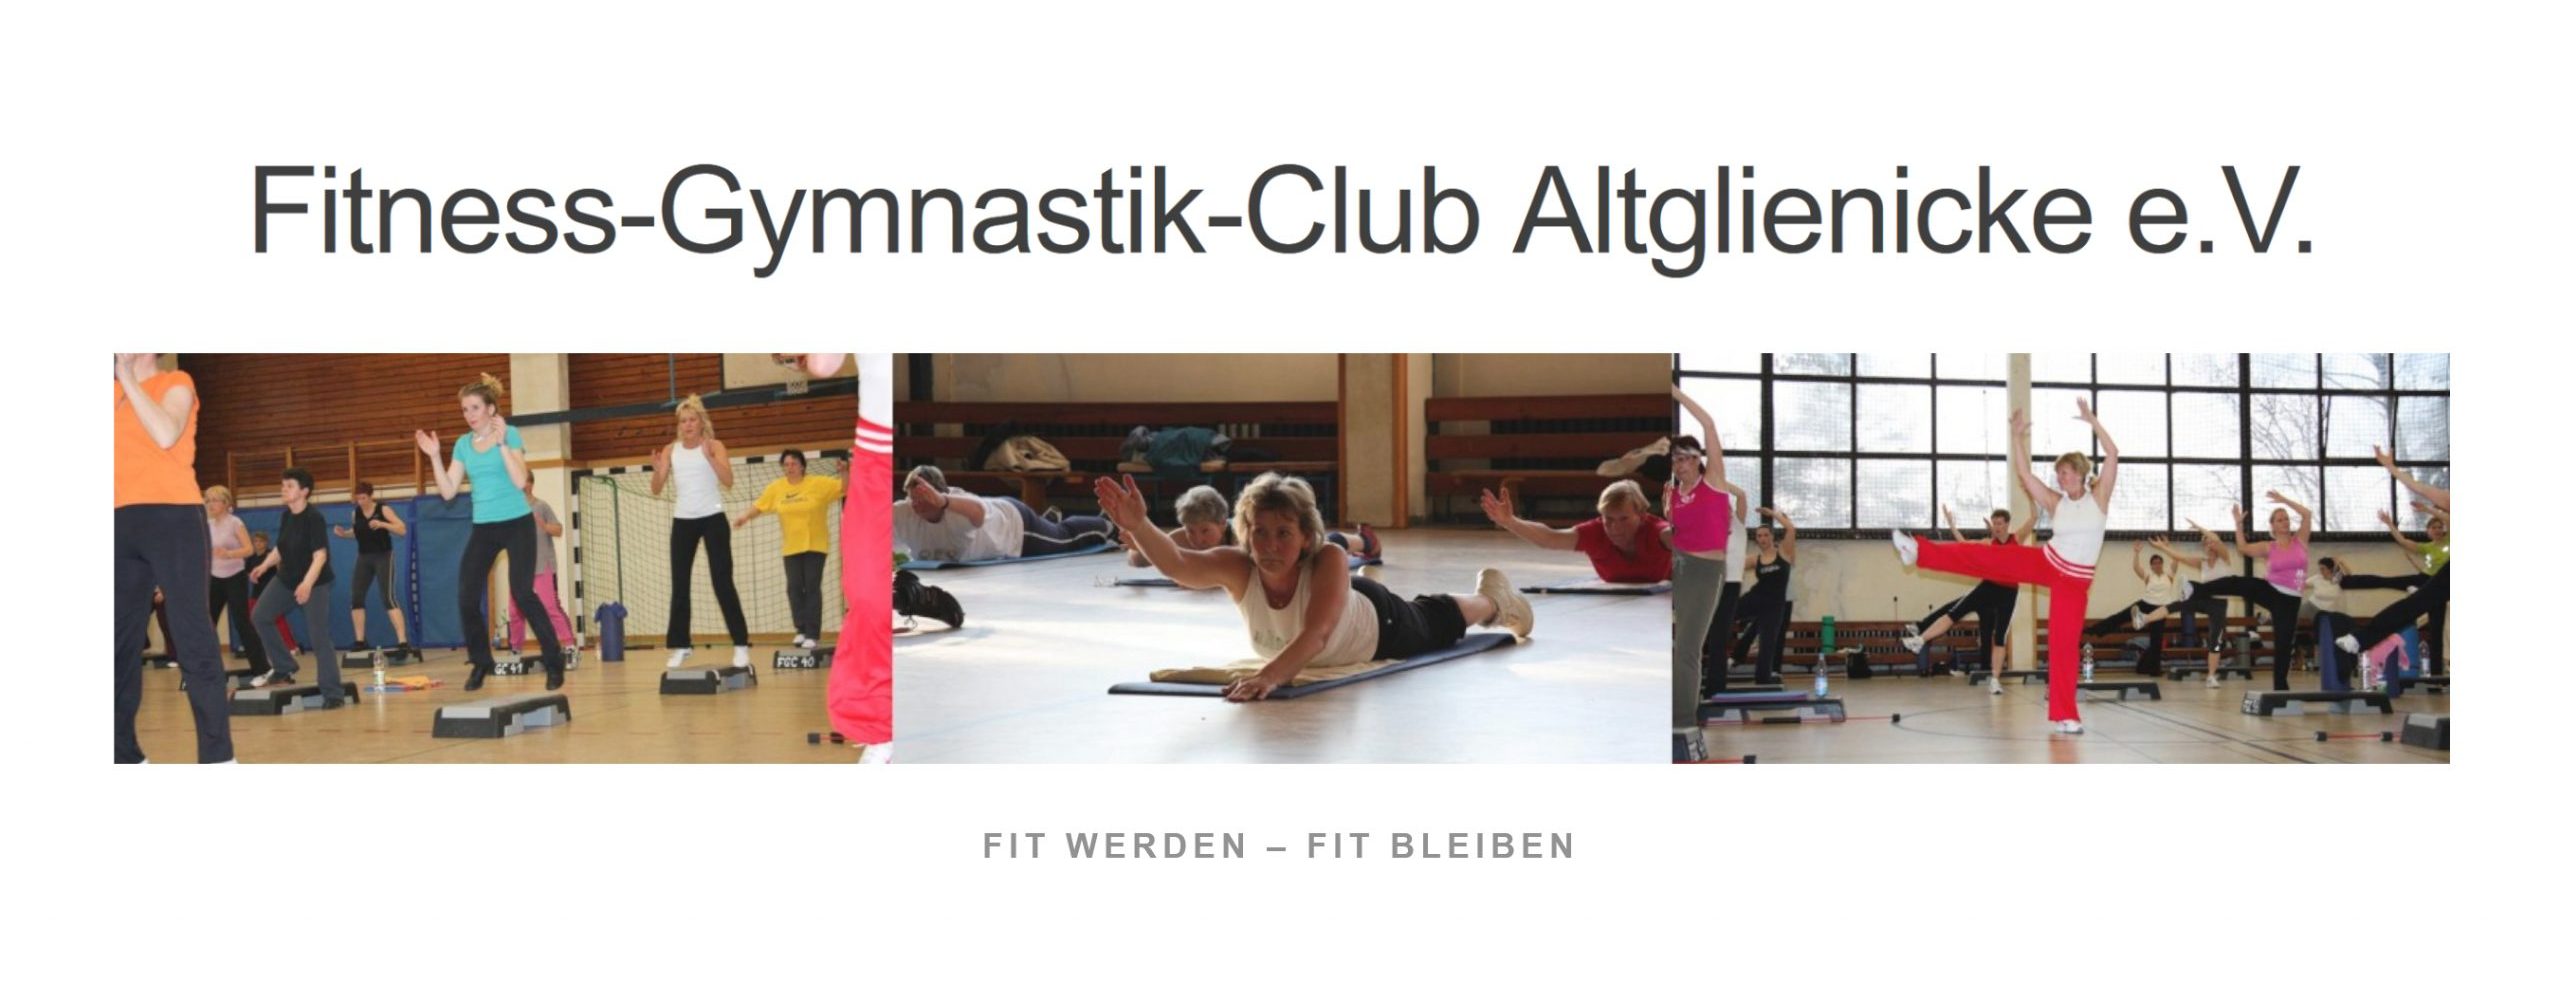 Fitness-Gymnastik-Club Altglienicke e.V.